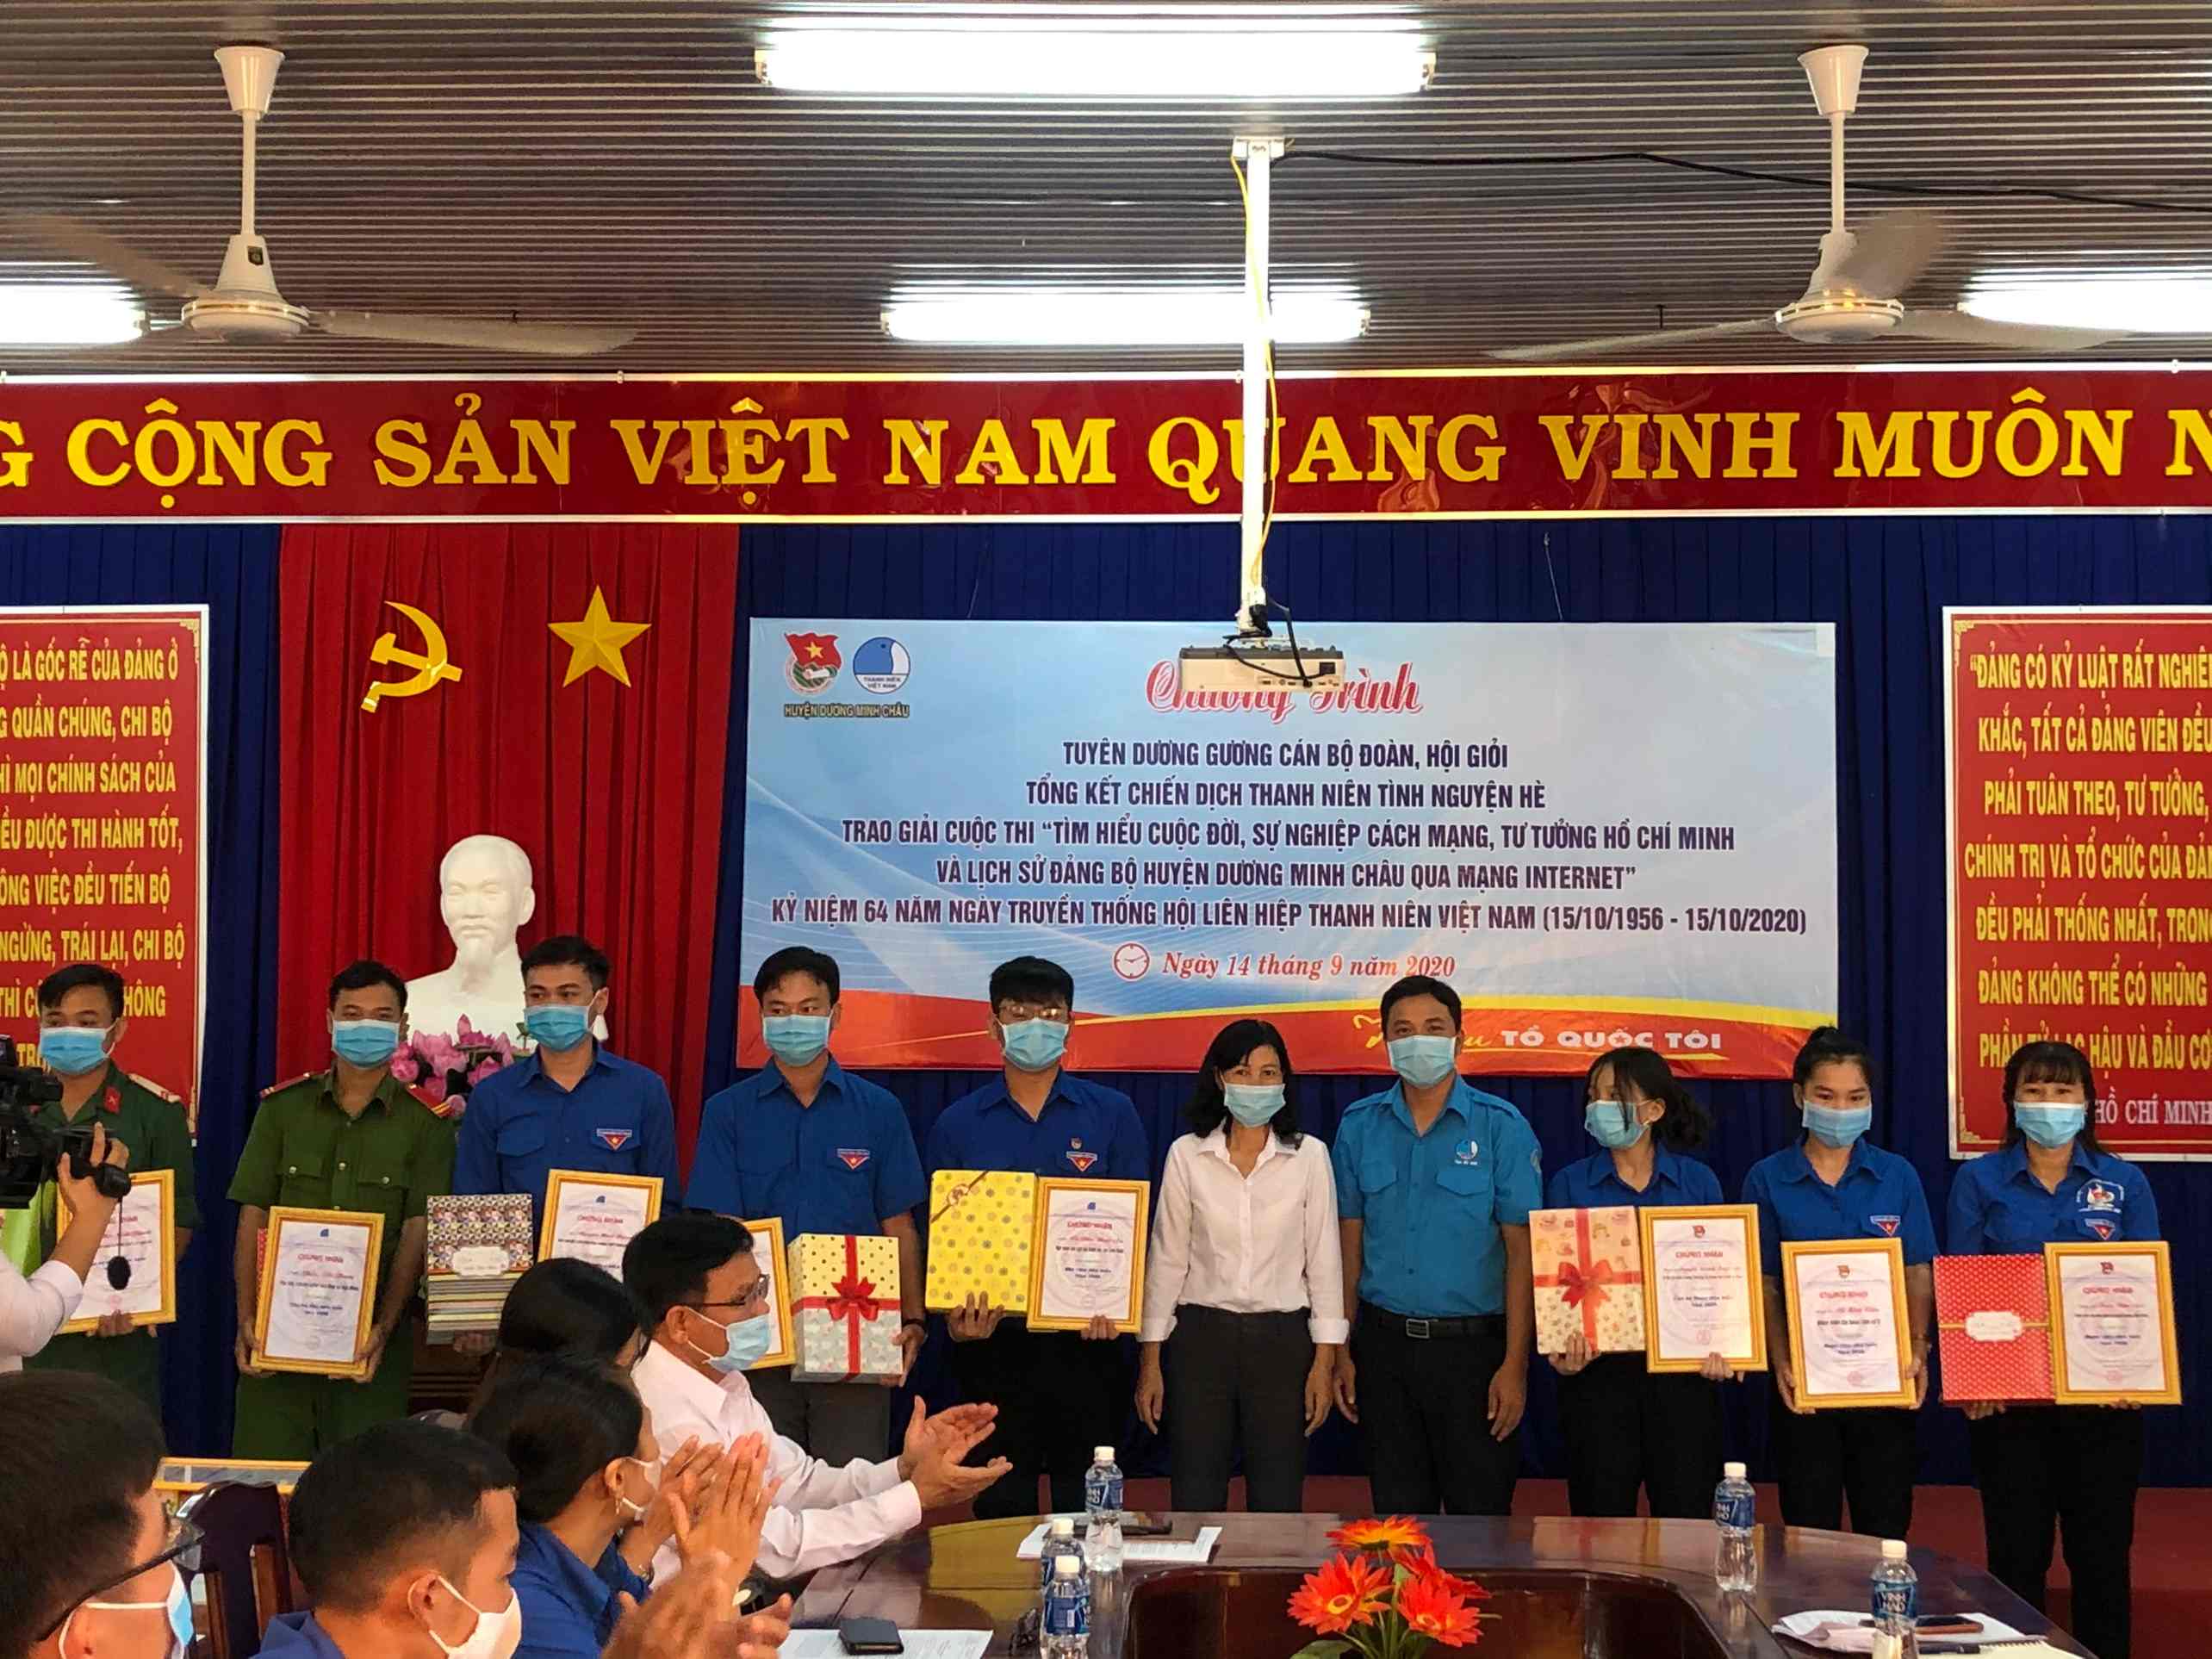 Huyện Dương Minh Châu tuyên dương cán bộ đoàn hội giỏi